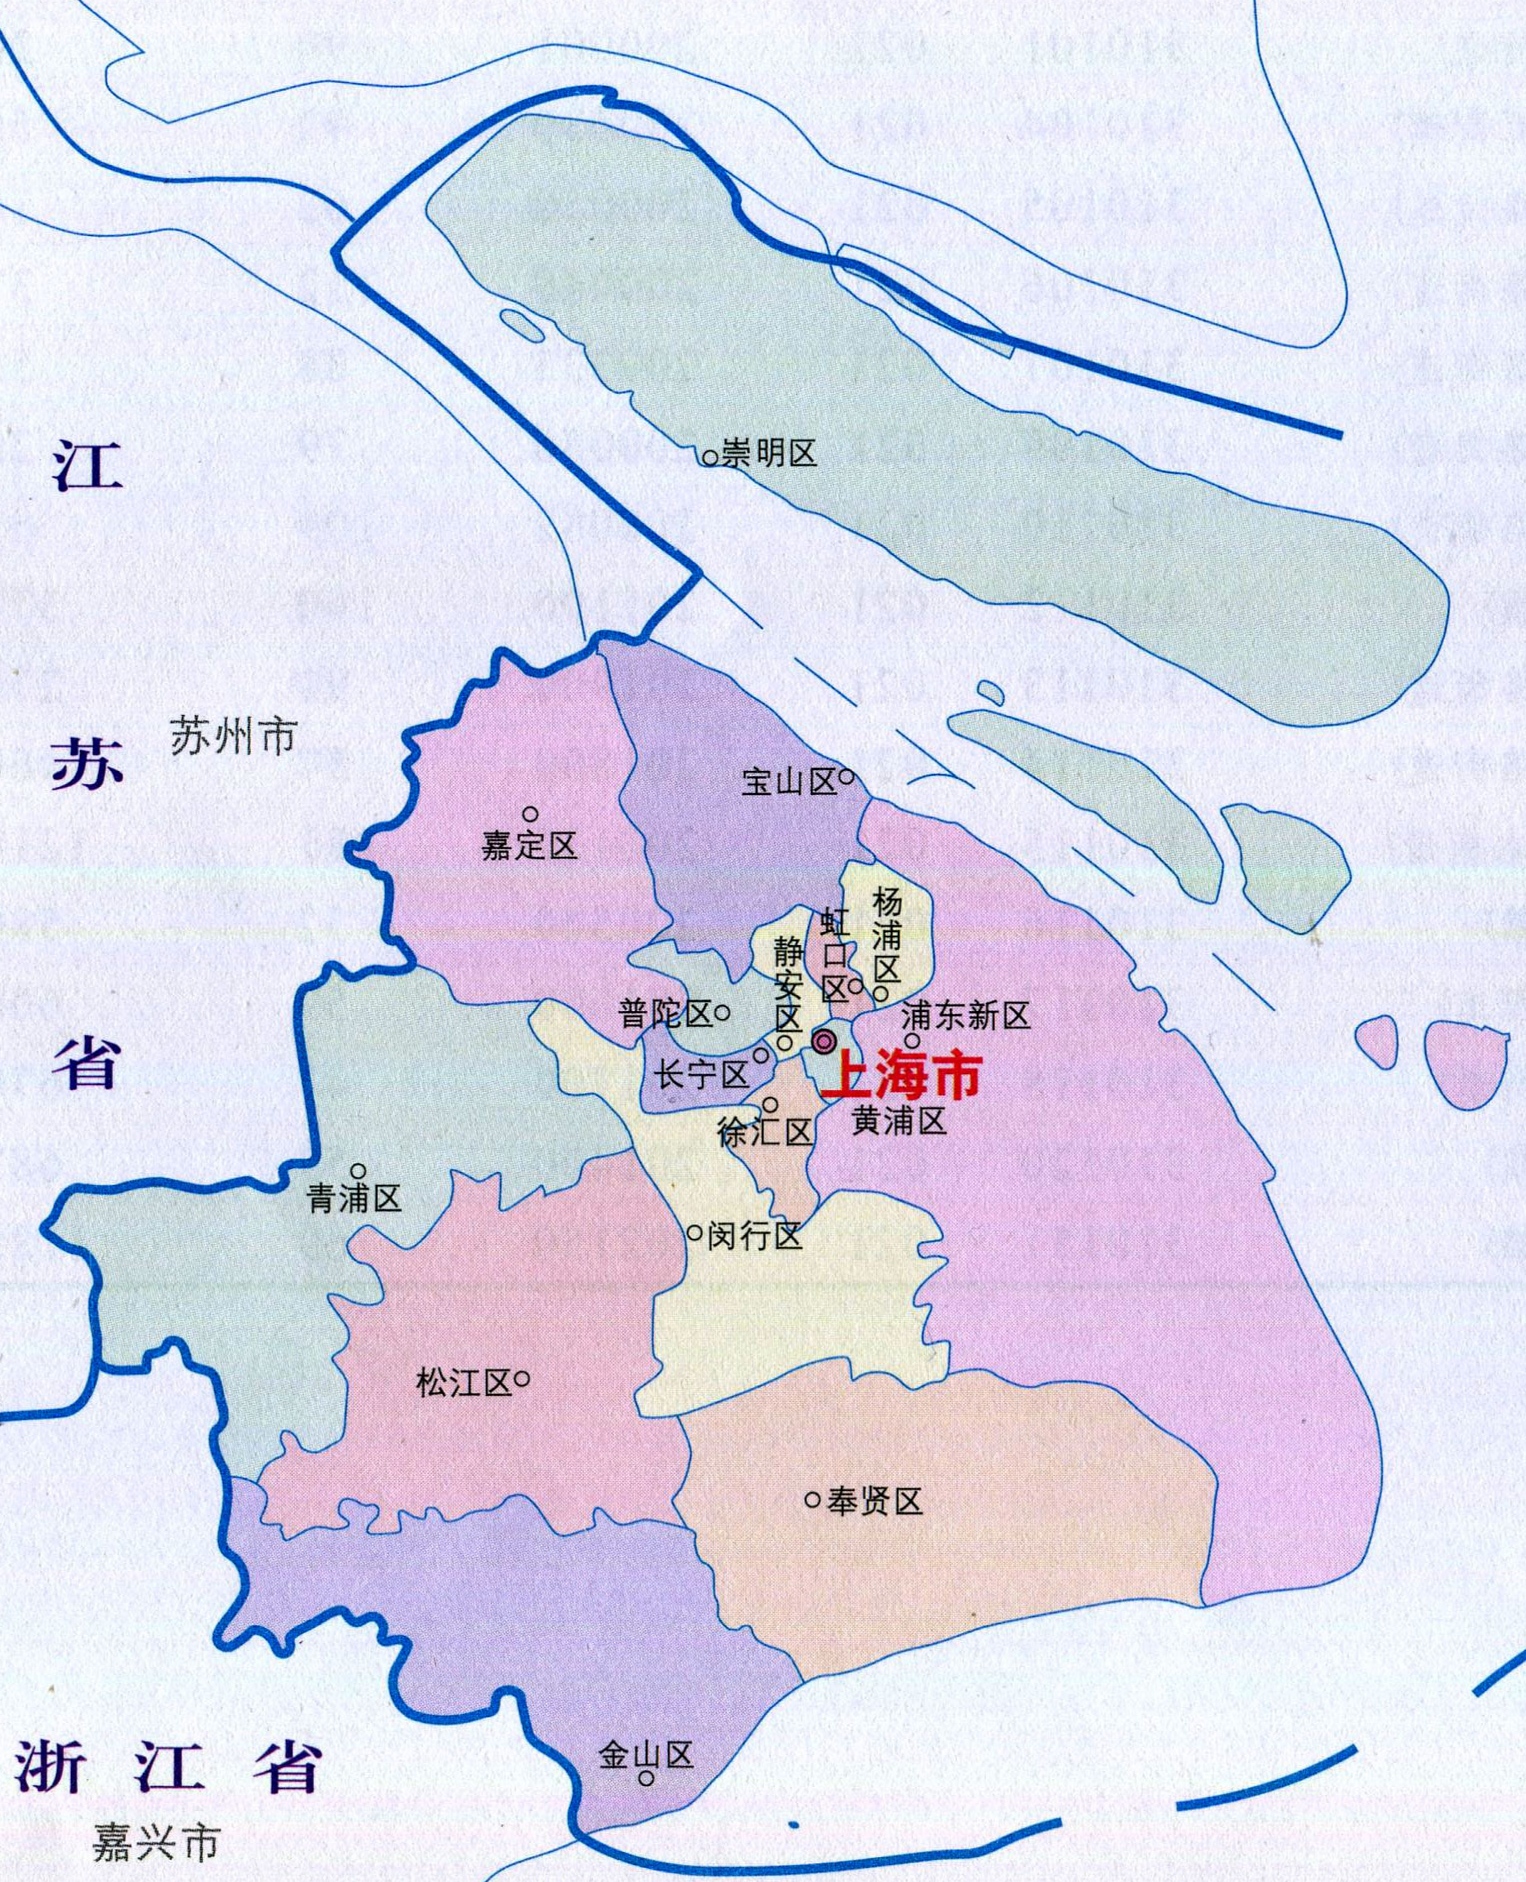 上海黄浦区地理位置图片